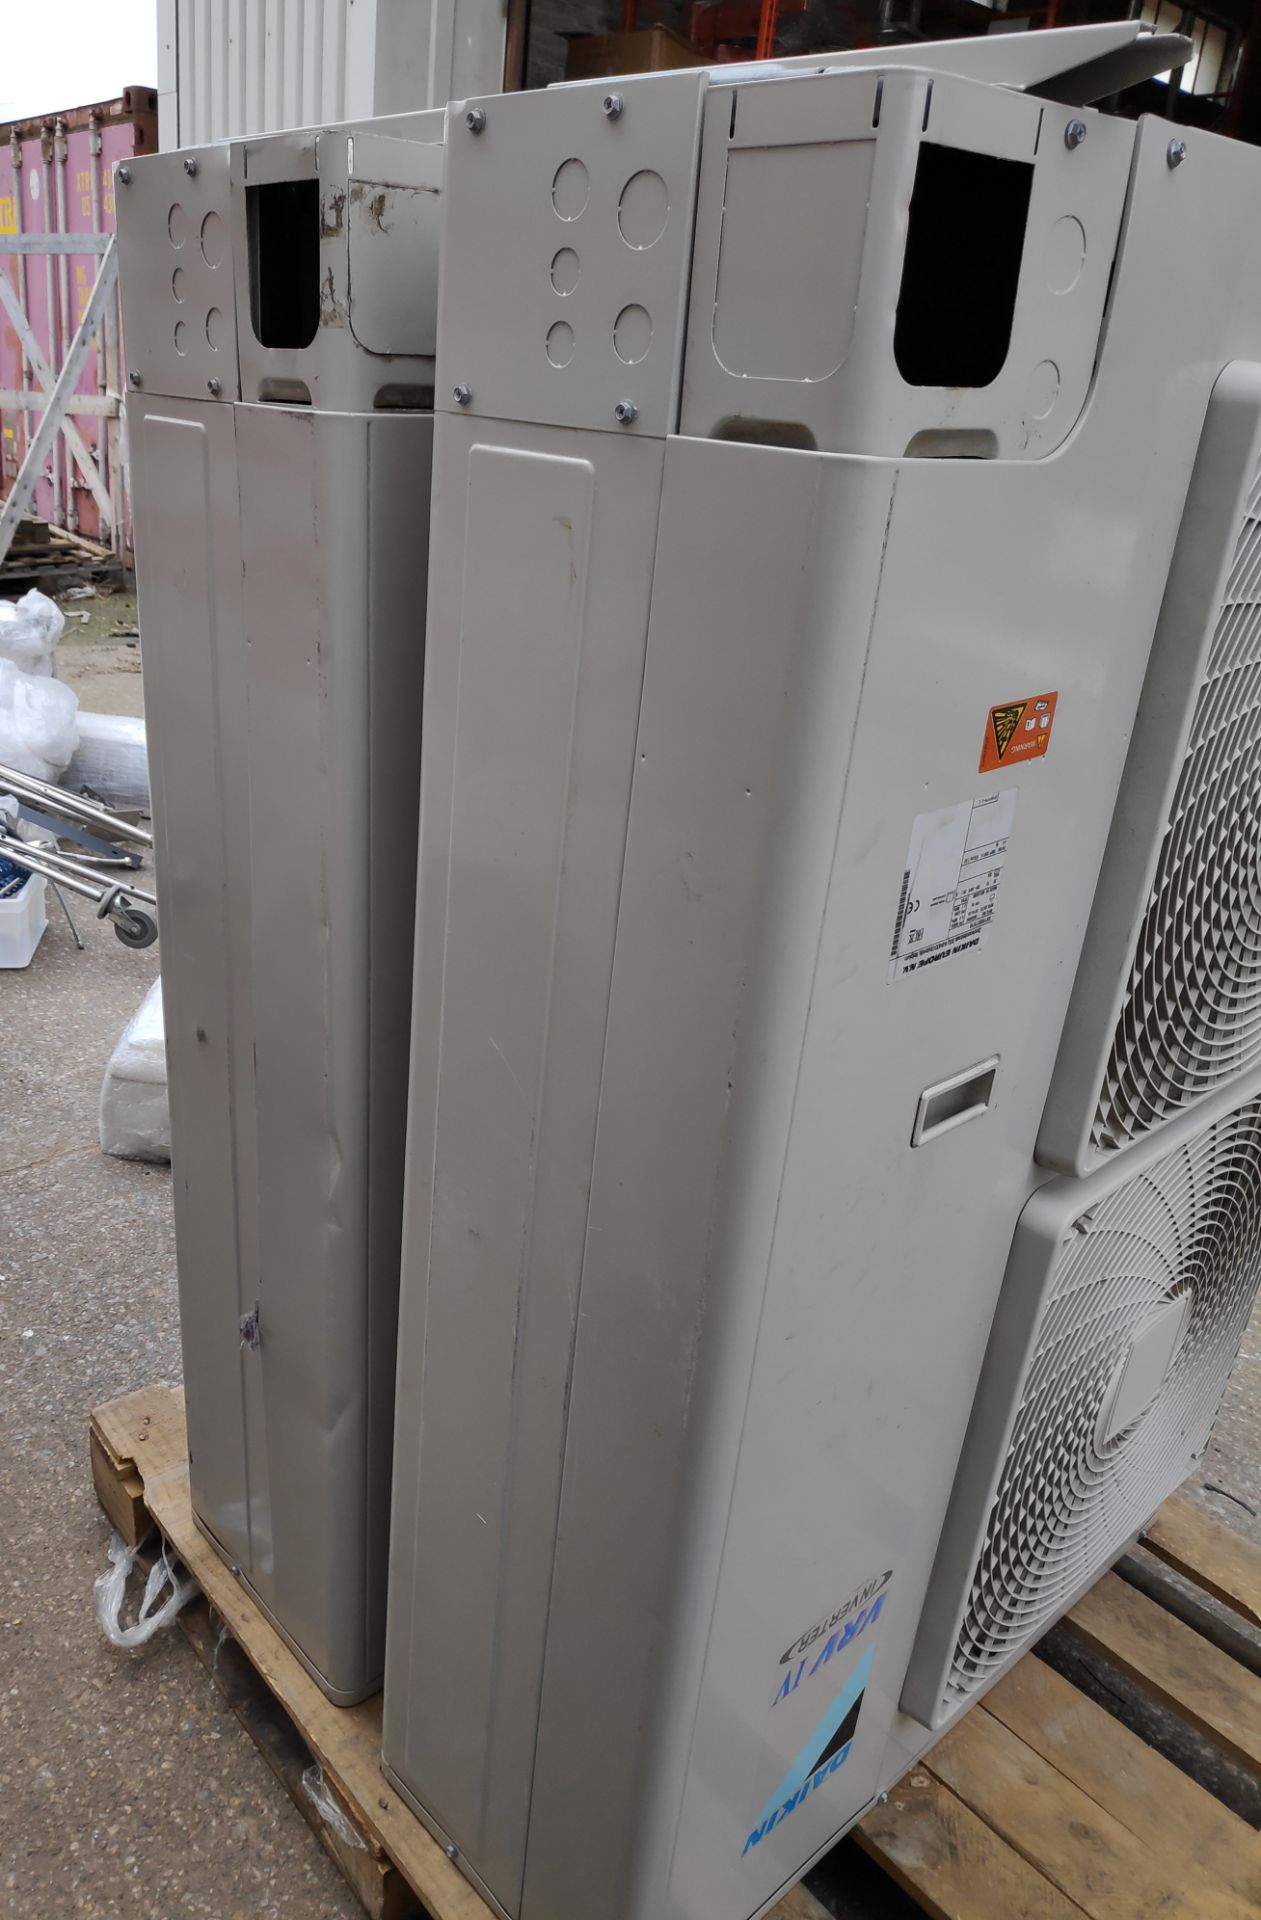 2 x Daikin VRV IV S-Series Air Conditioner Inverter Heat Pumps - Model: RXYSQ5T7V1B - JMCS114 - - Image 4 of 10